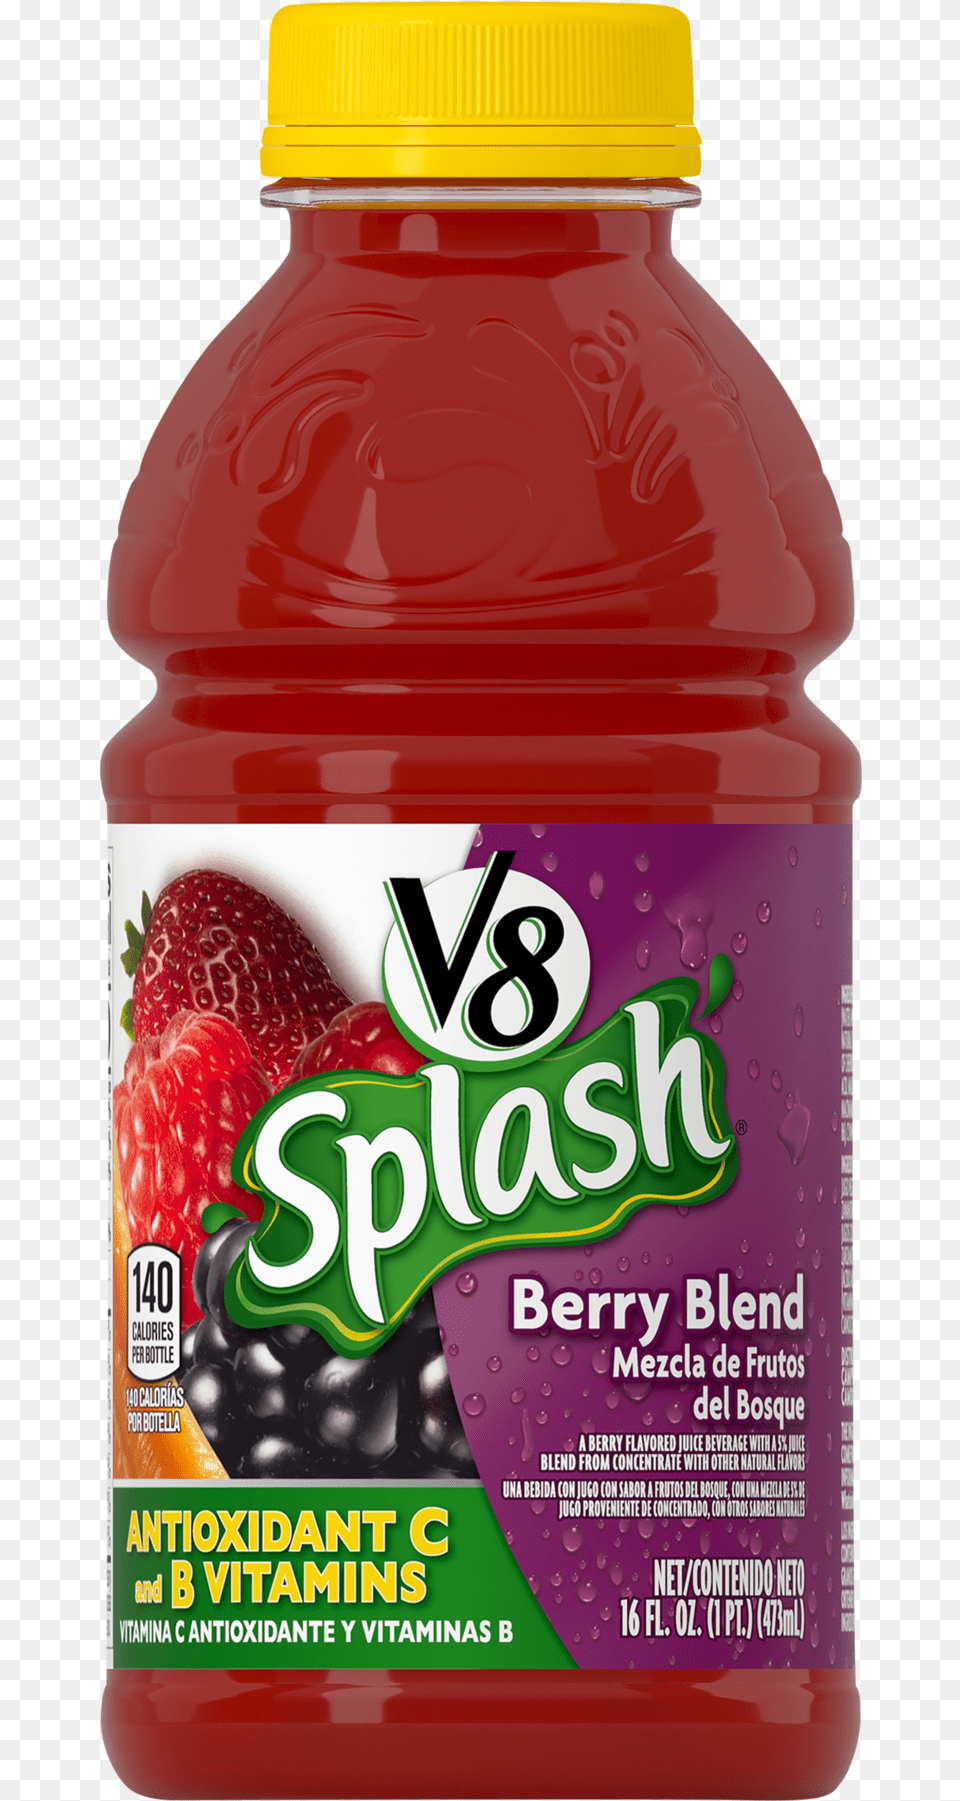 Splash Berry Blend Download V8 Splash, Beverage, Juice, Food, Fruit Png Image